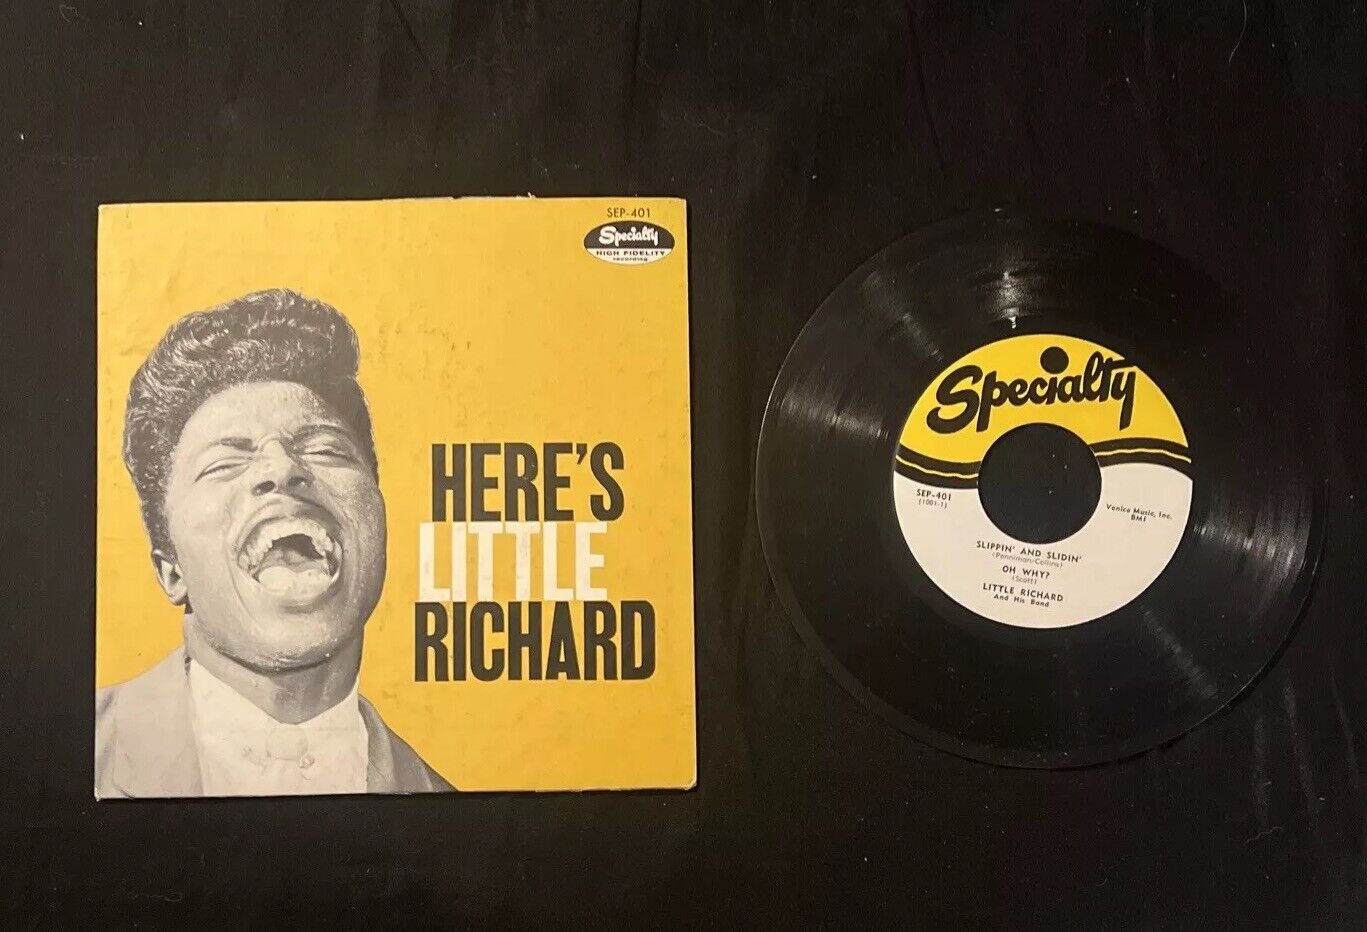 Little Richard  HERE'S LITTLE RICHARD (R&R 45) EP 401  VG